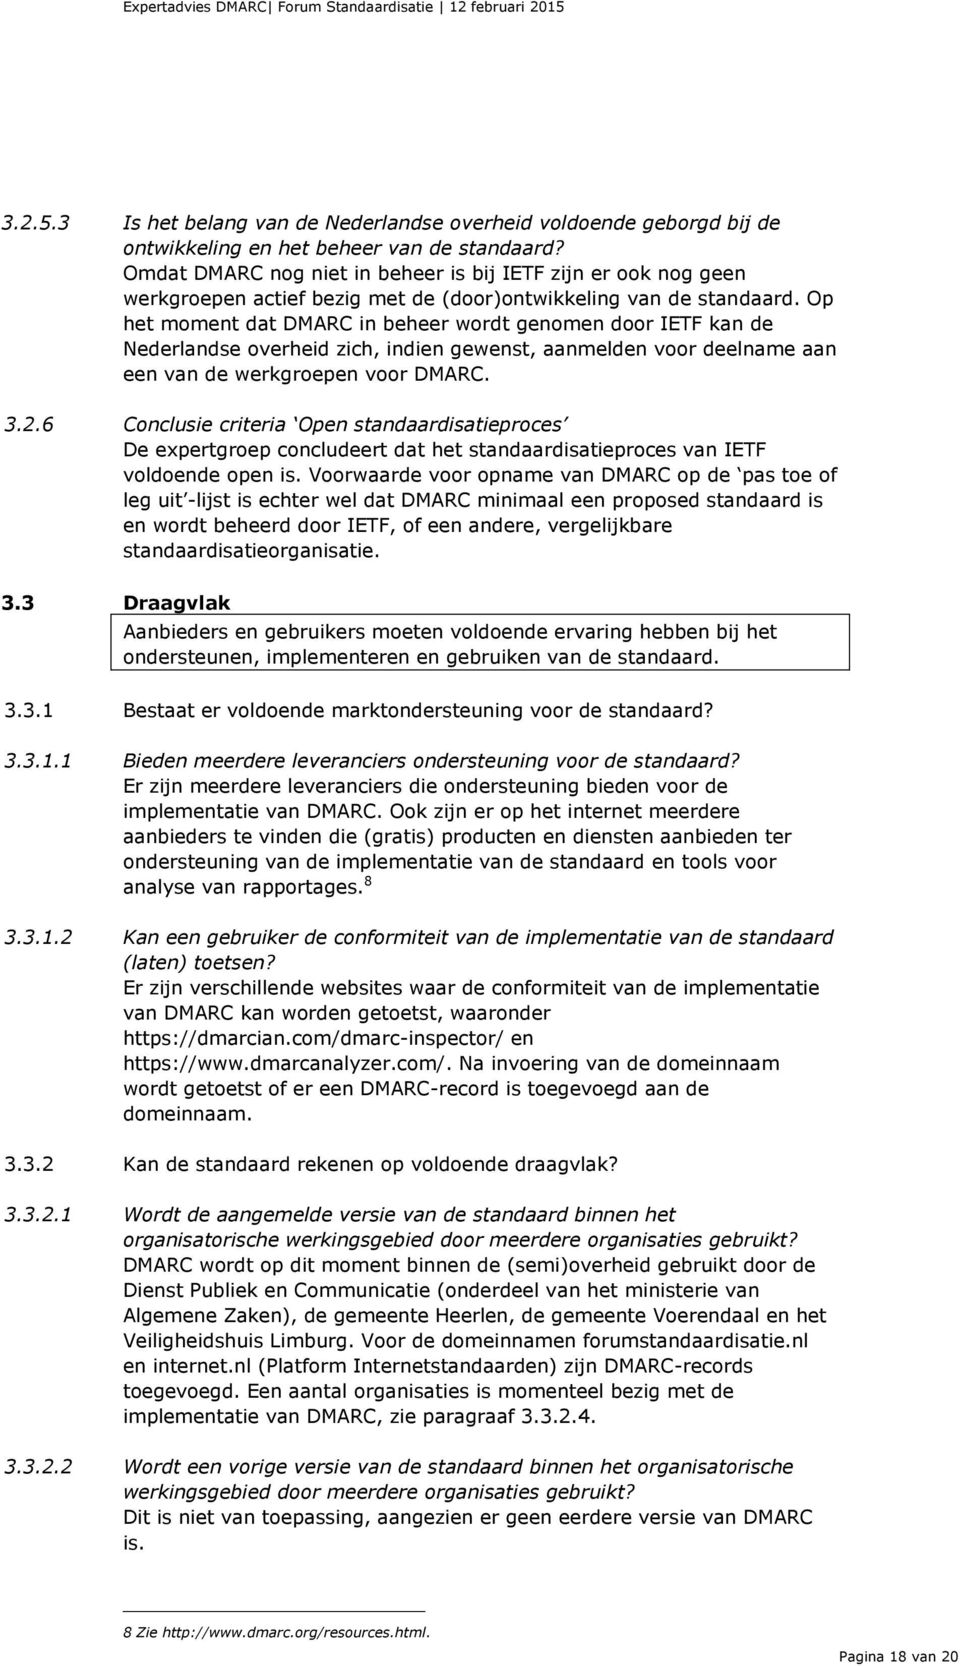 Op het moment dat DMARC in beheer wordt genomen door IETF kan de Nederlandse overheid zich, indien gewenst, aanmelden voor deelname aan een van de werkgroepen voor DMARC. 3.2.